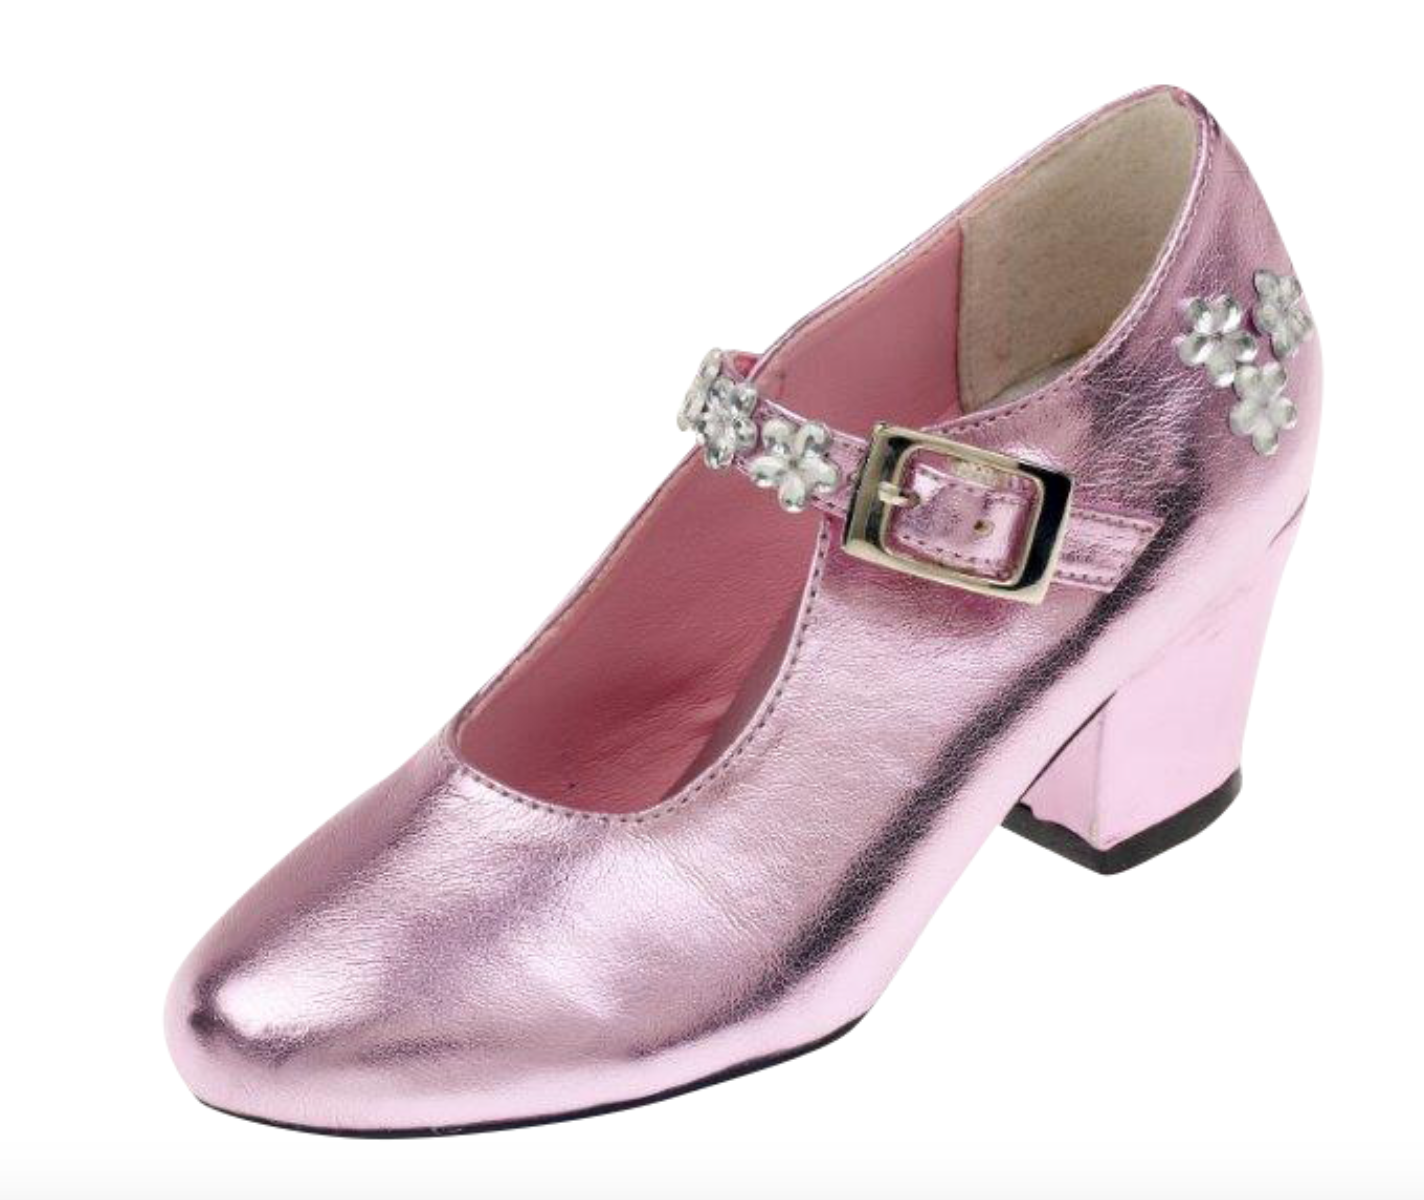 Schoenen roze metallic, hoge hak, mt 28